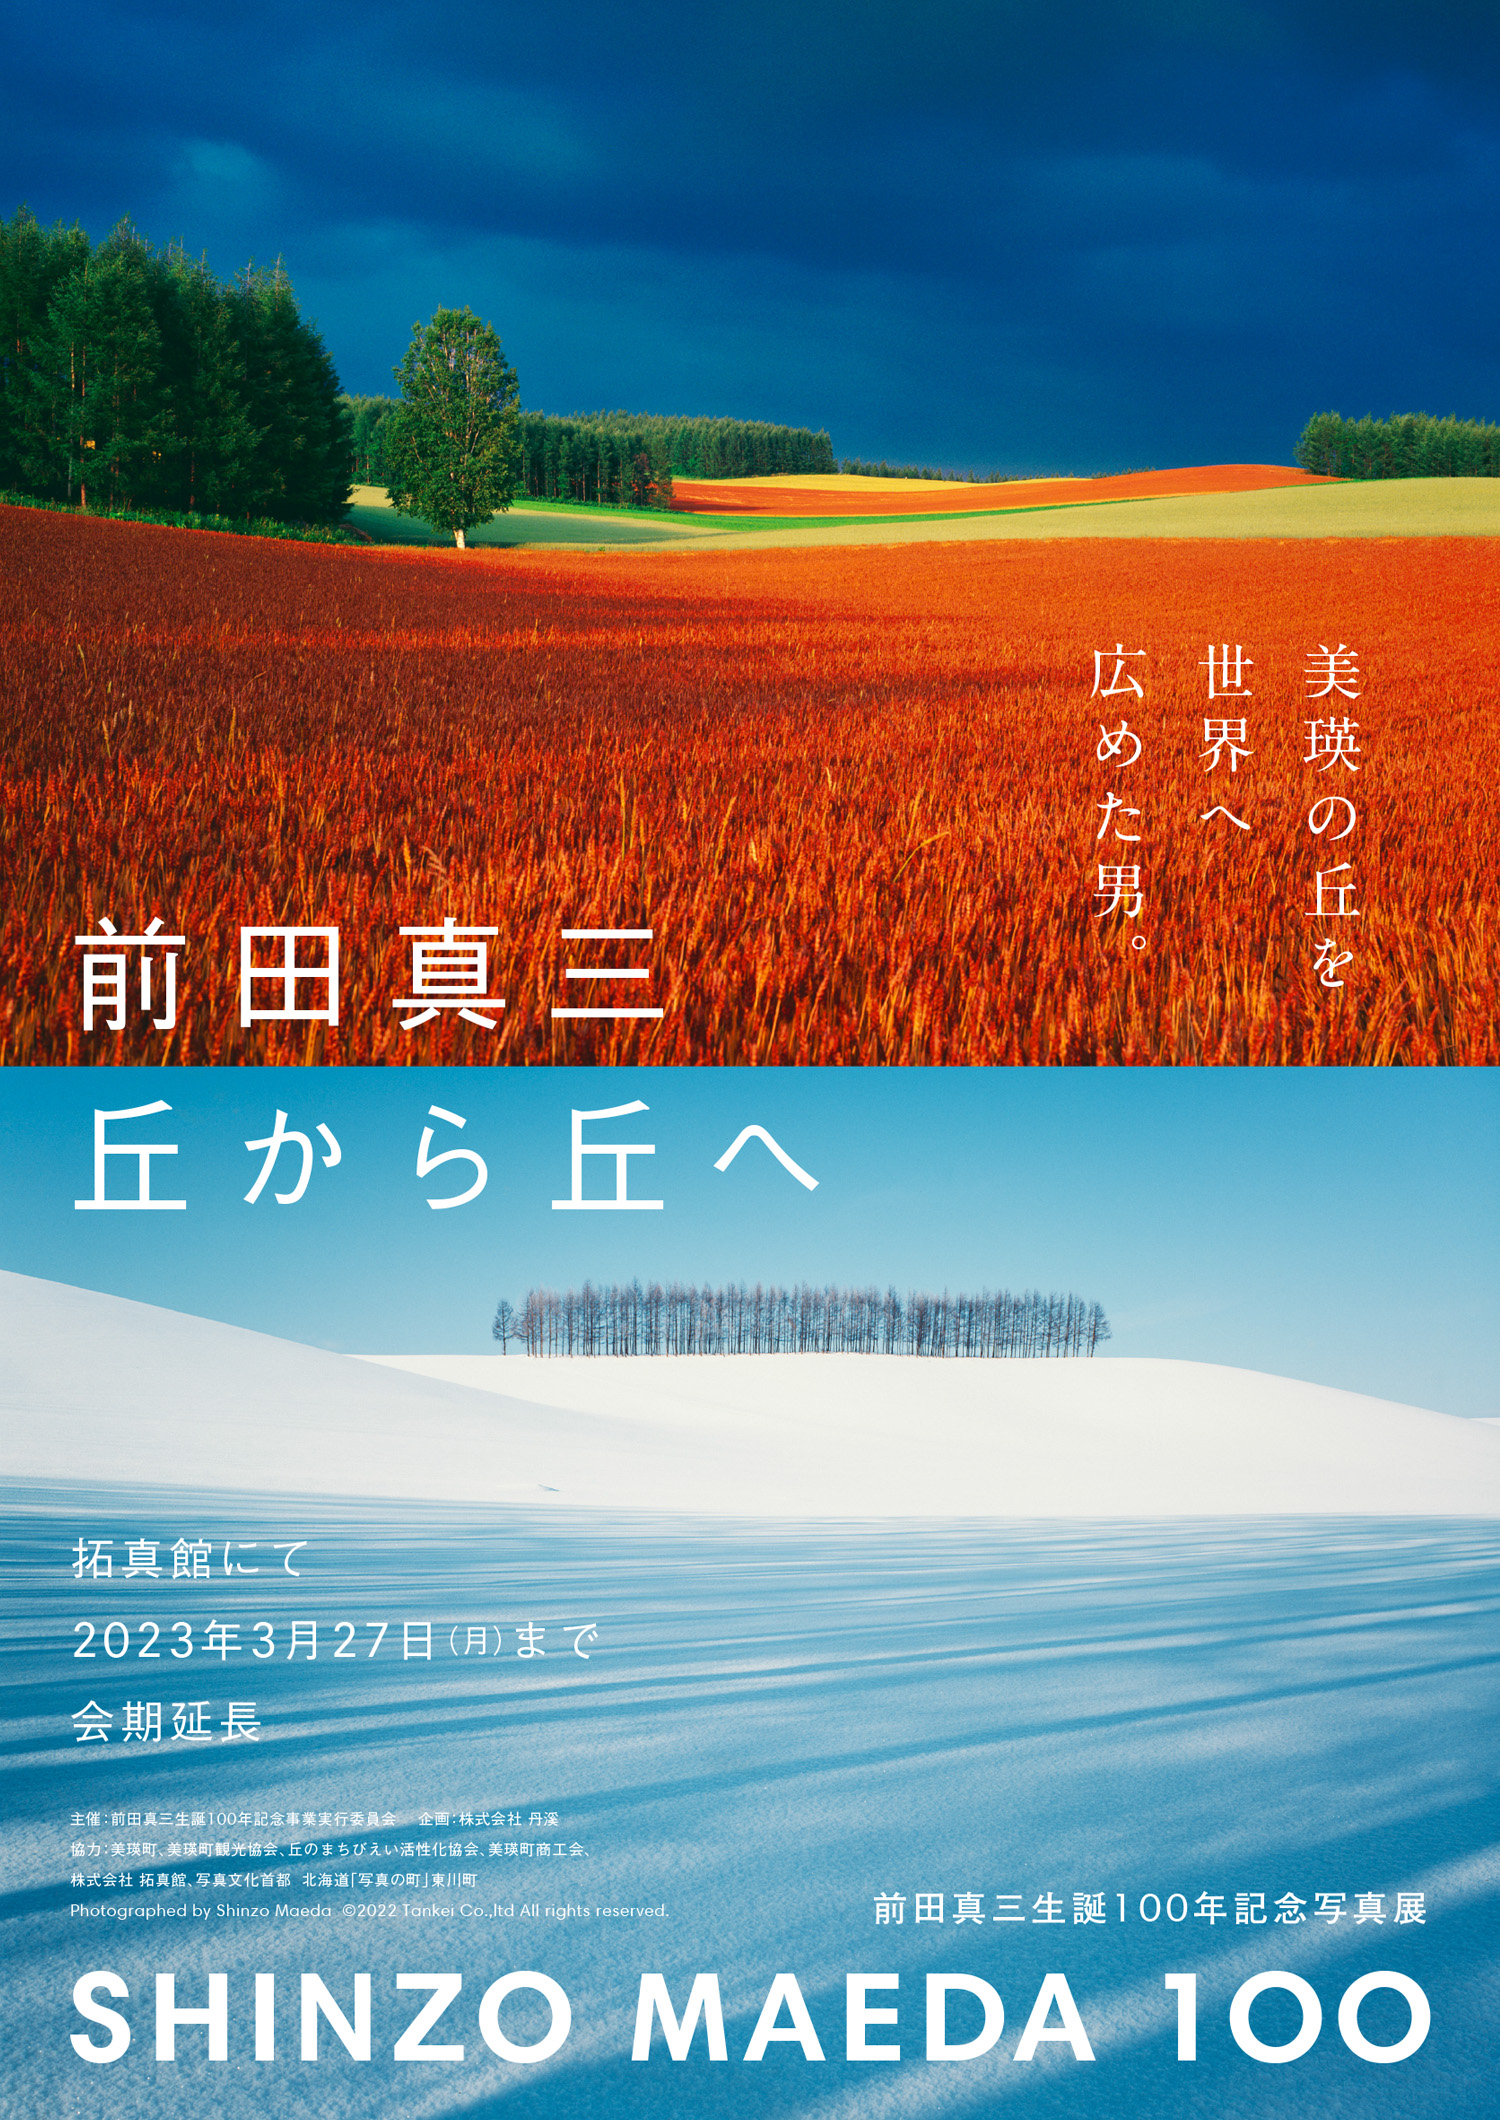 前田真三生誕100年記念展『SHINZO MAEDA 丘から丘へ』会期延長